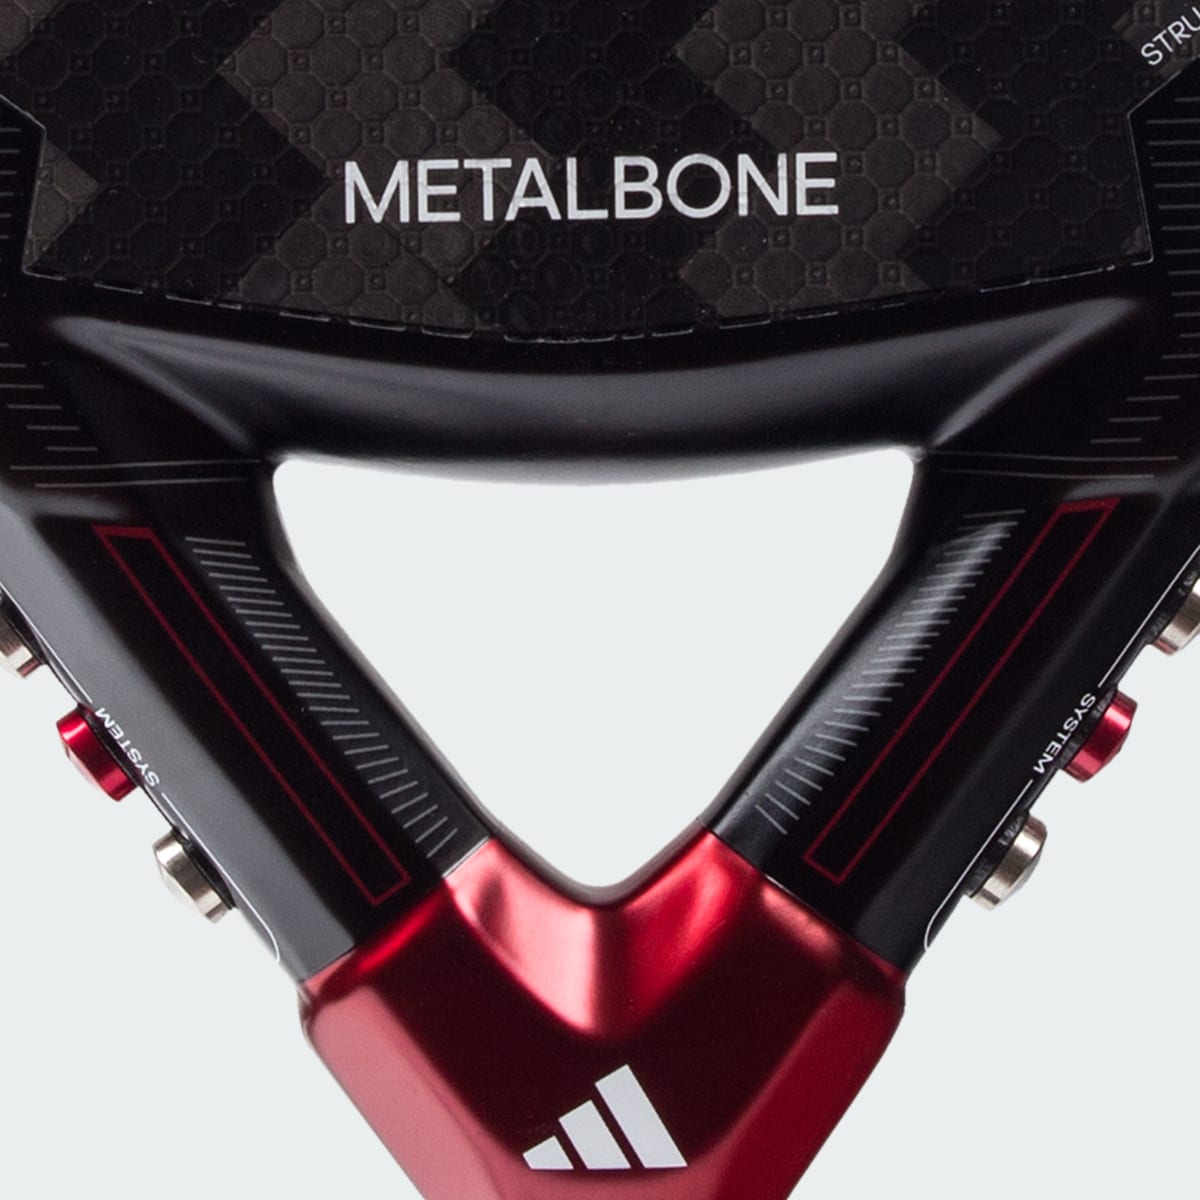 Adidas Racchetta da padel Metalbone 3.3. 5